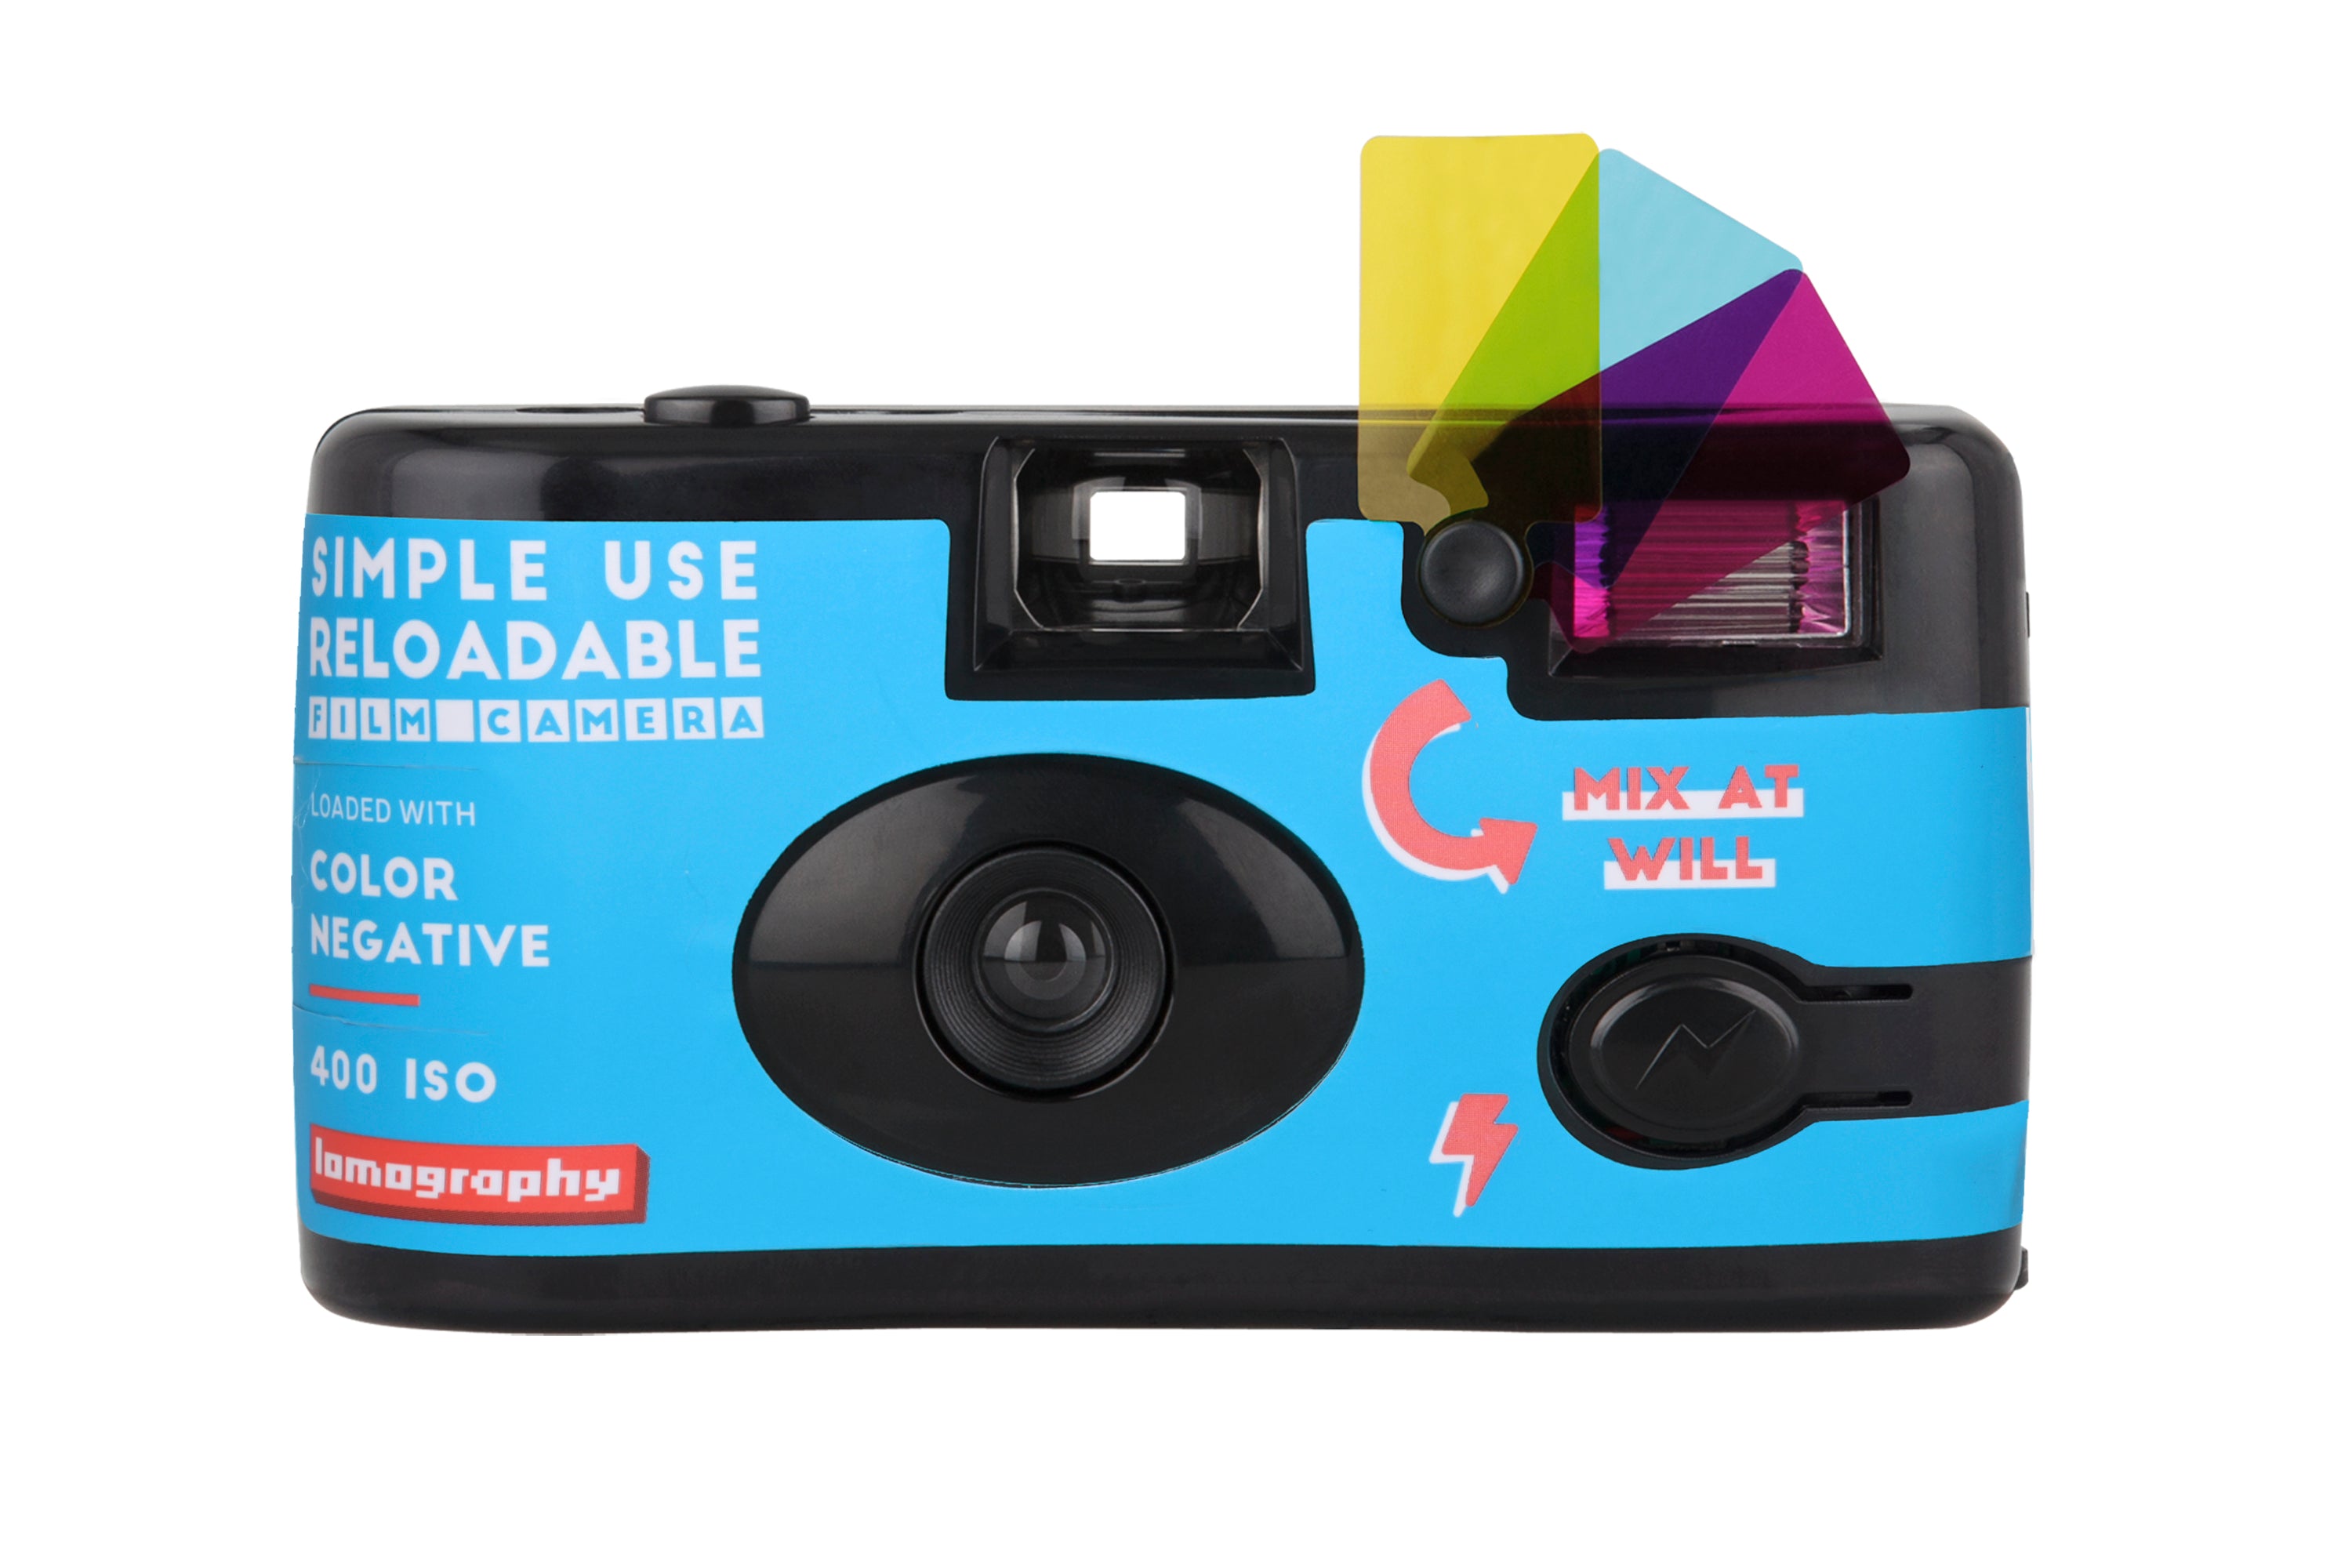 LOMOGRAPHY RELOADABLE 35mm film camera